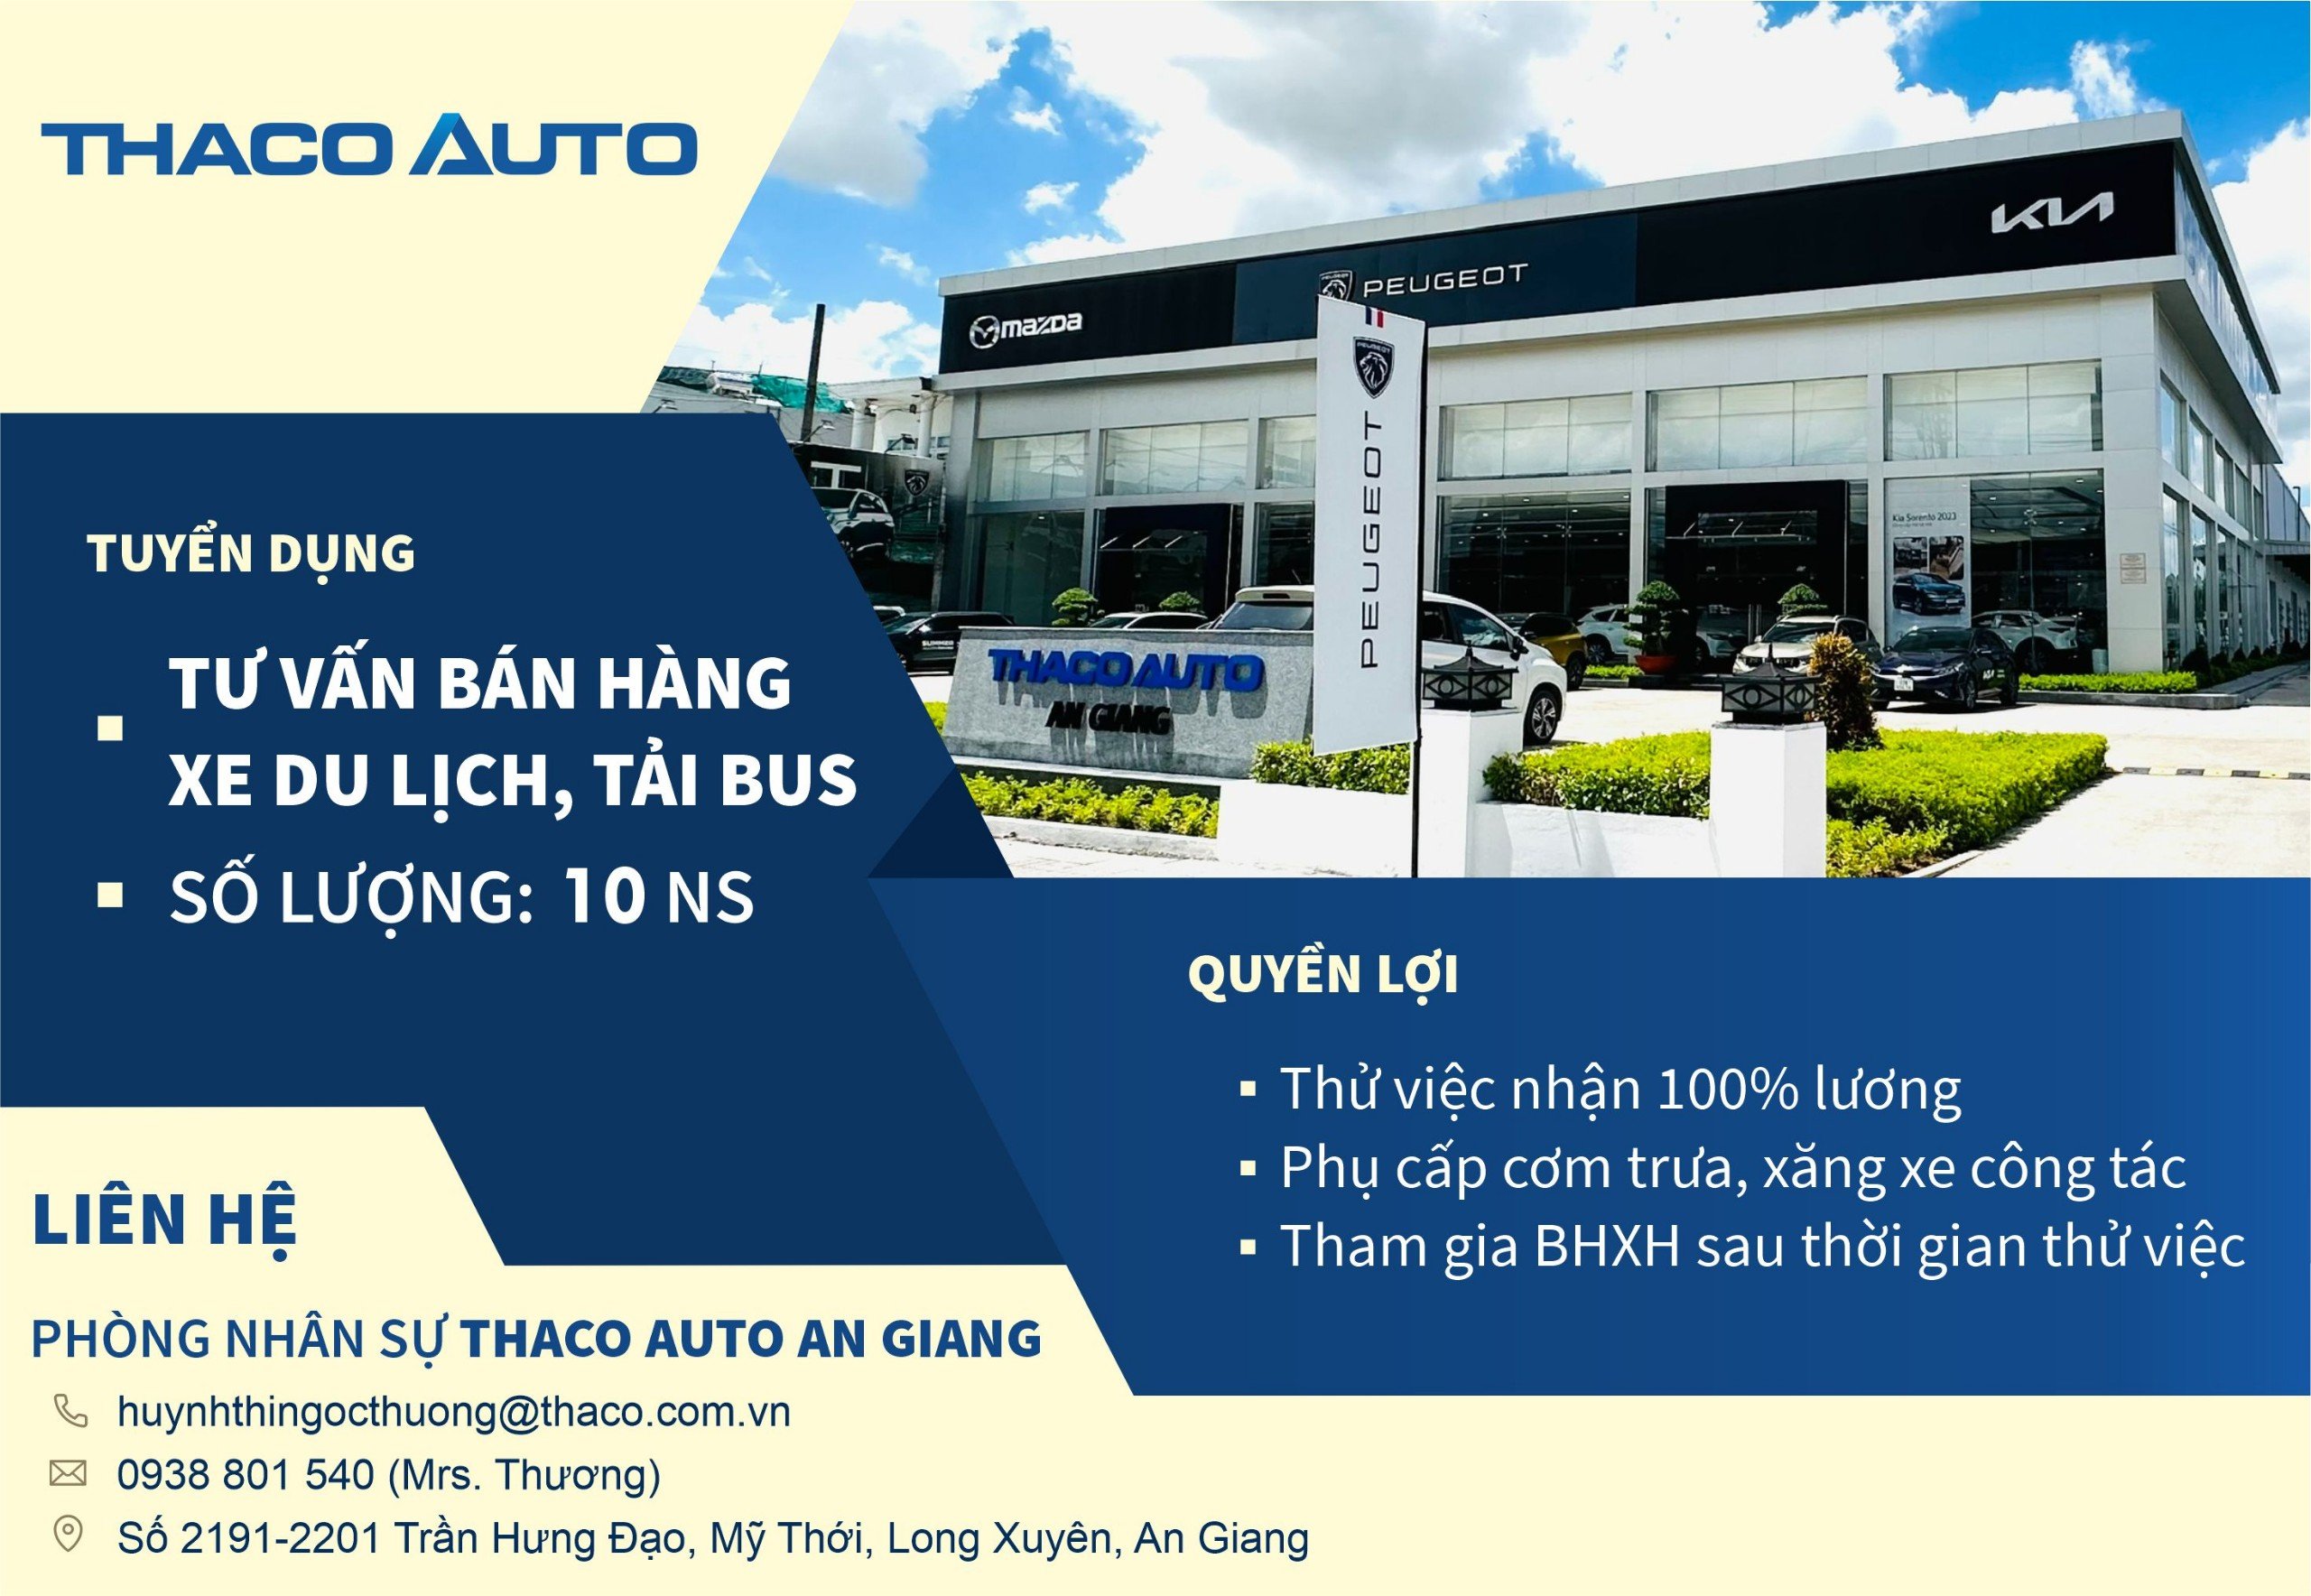 THACO AUTO An Giang tuyển dụng 10 tư vấn bán hàng xe Du lịch, xe Tải Bus